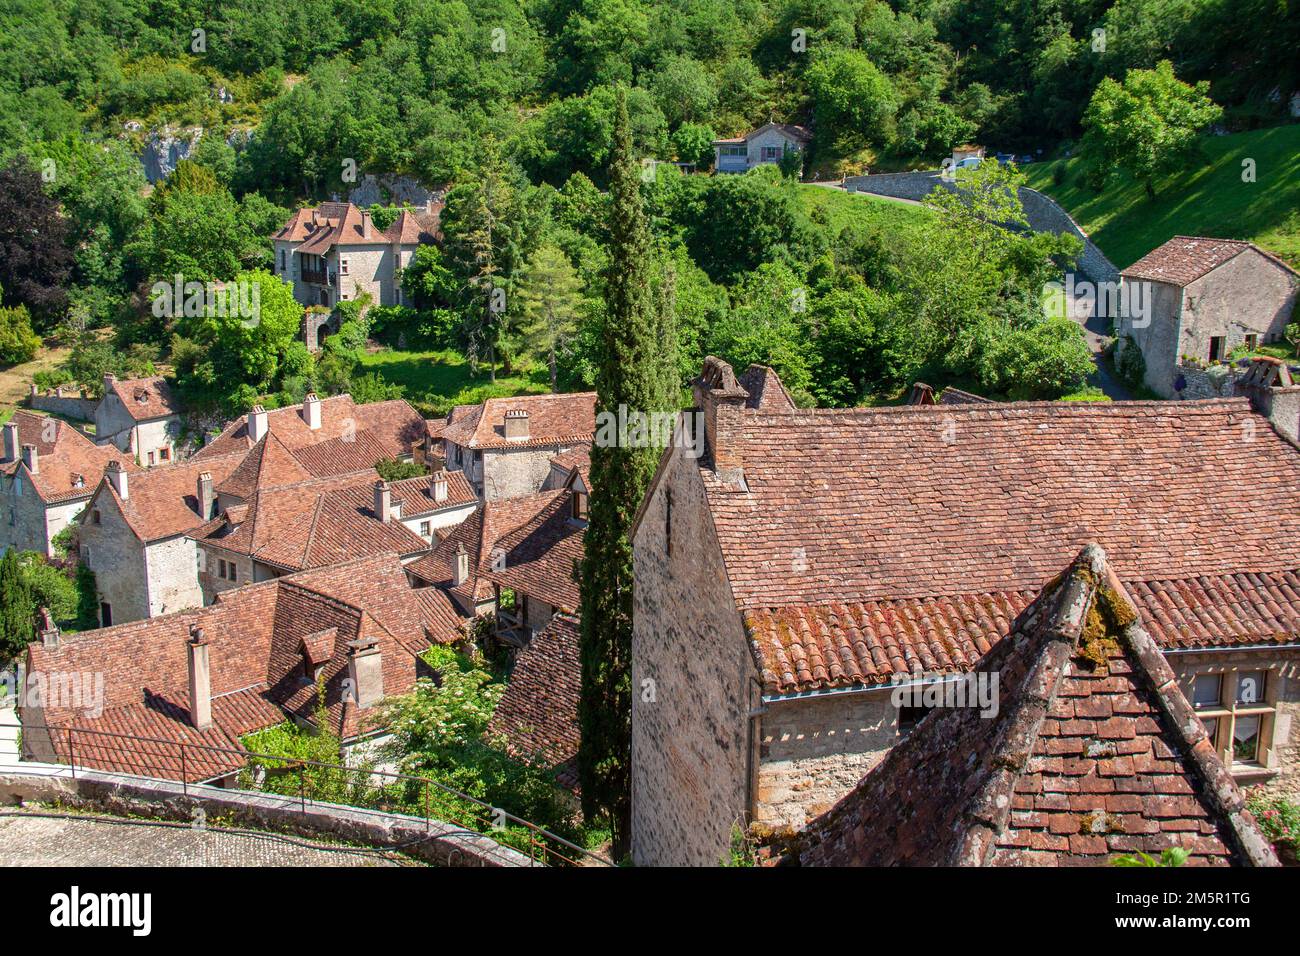 Saint-Cirq-Lapopie. Les toitures du village. Lot. Stock Photo